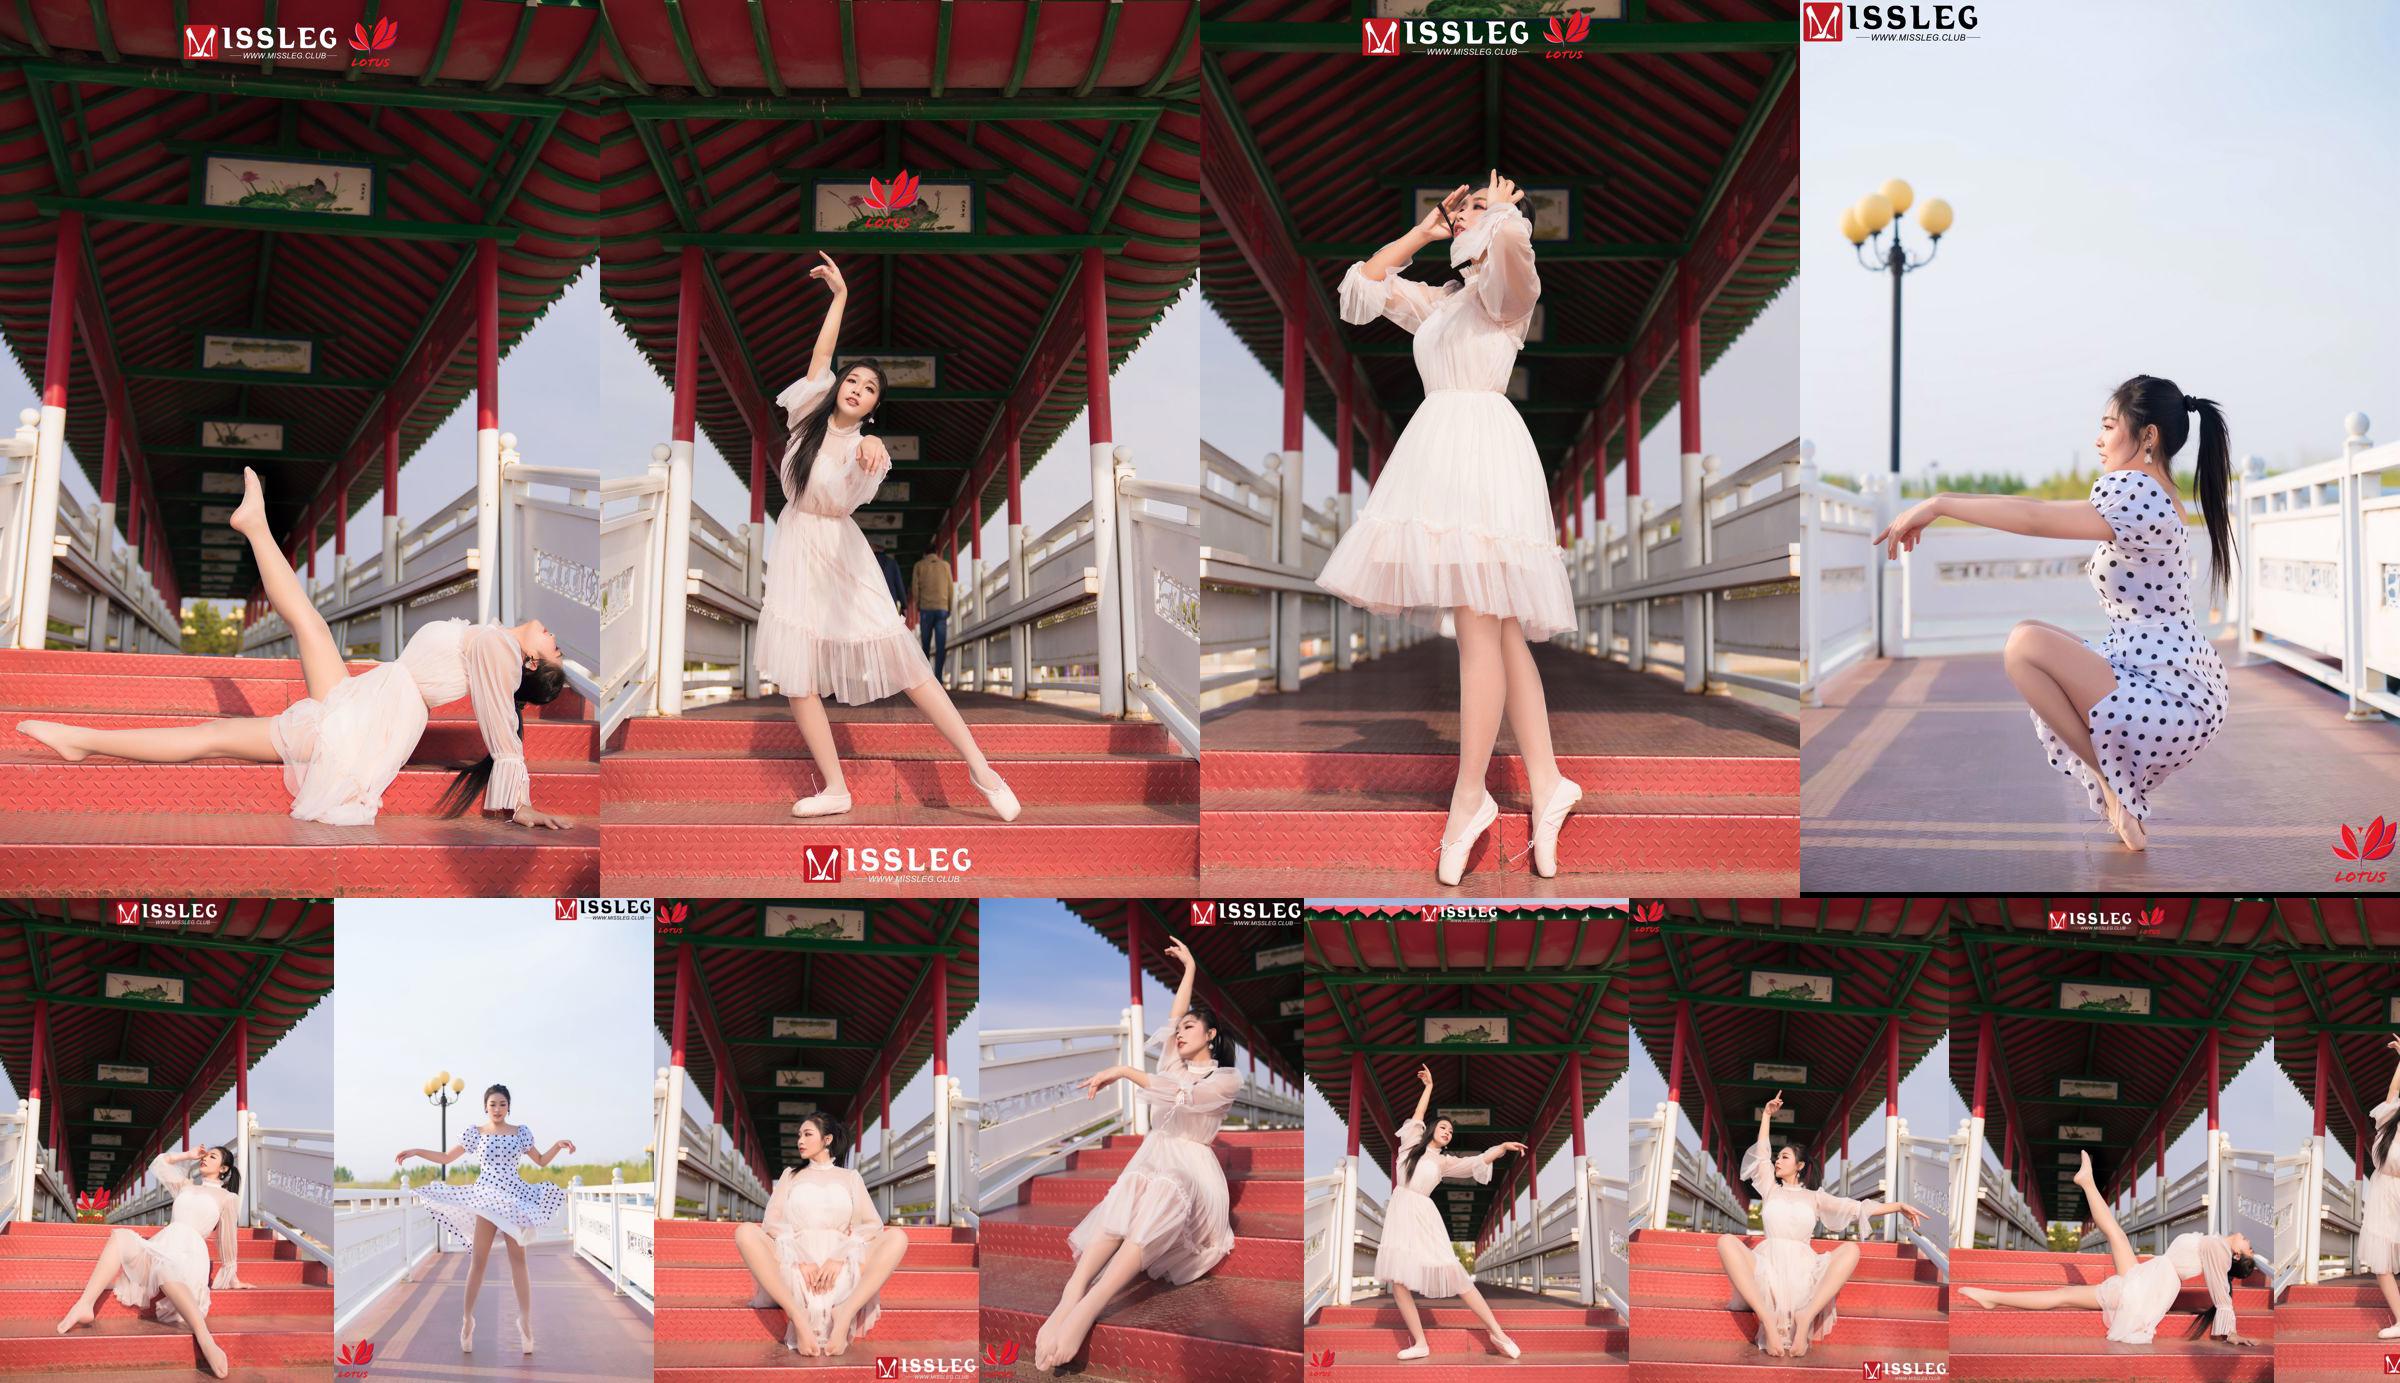 [蜜 丝 MISSLEG] M018 Imp 3 "Scenic Dancer" No.18bd04 Page 1